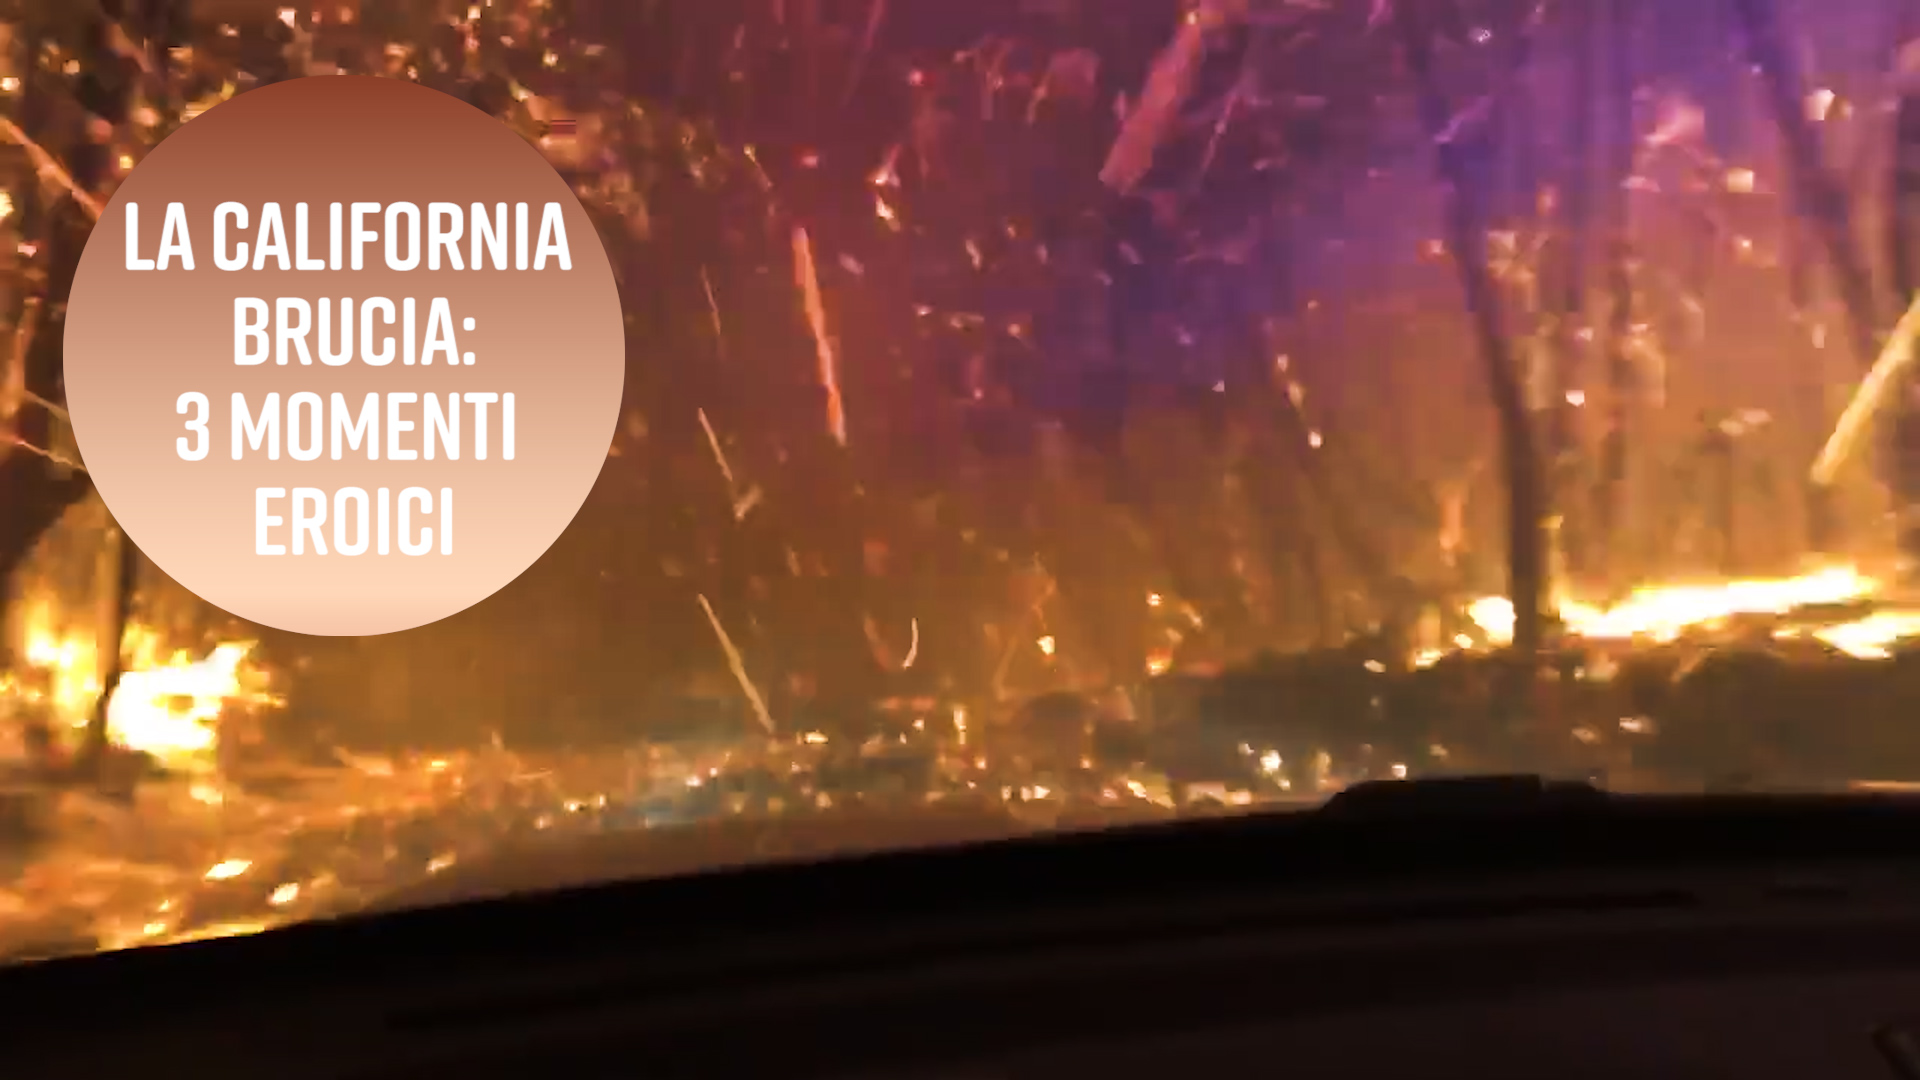 La California e' in fiamme: 3 momenti eroici